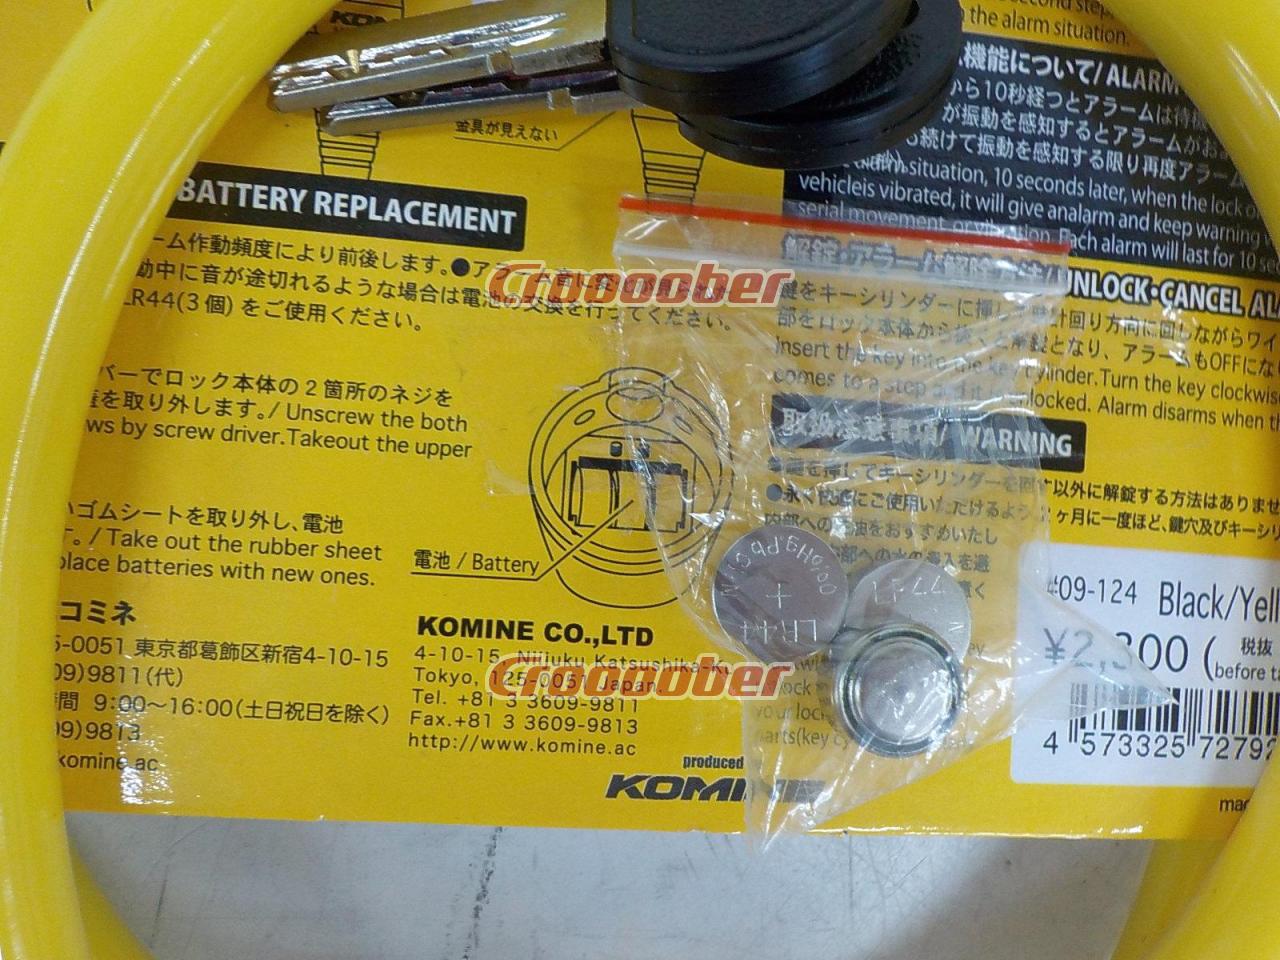 日本産 コミネ Komine バイク用 アクセサリー Accessories LK-124 アラームワイヤーヘルメットロック ブラック イエロー 黒  黄 09-124 BK YL F